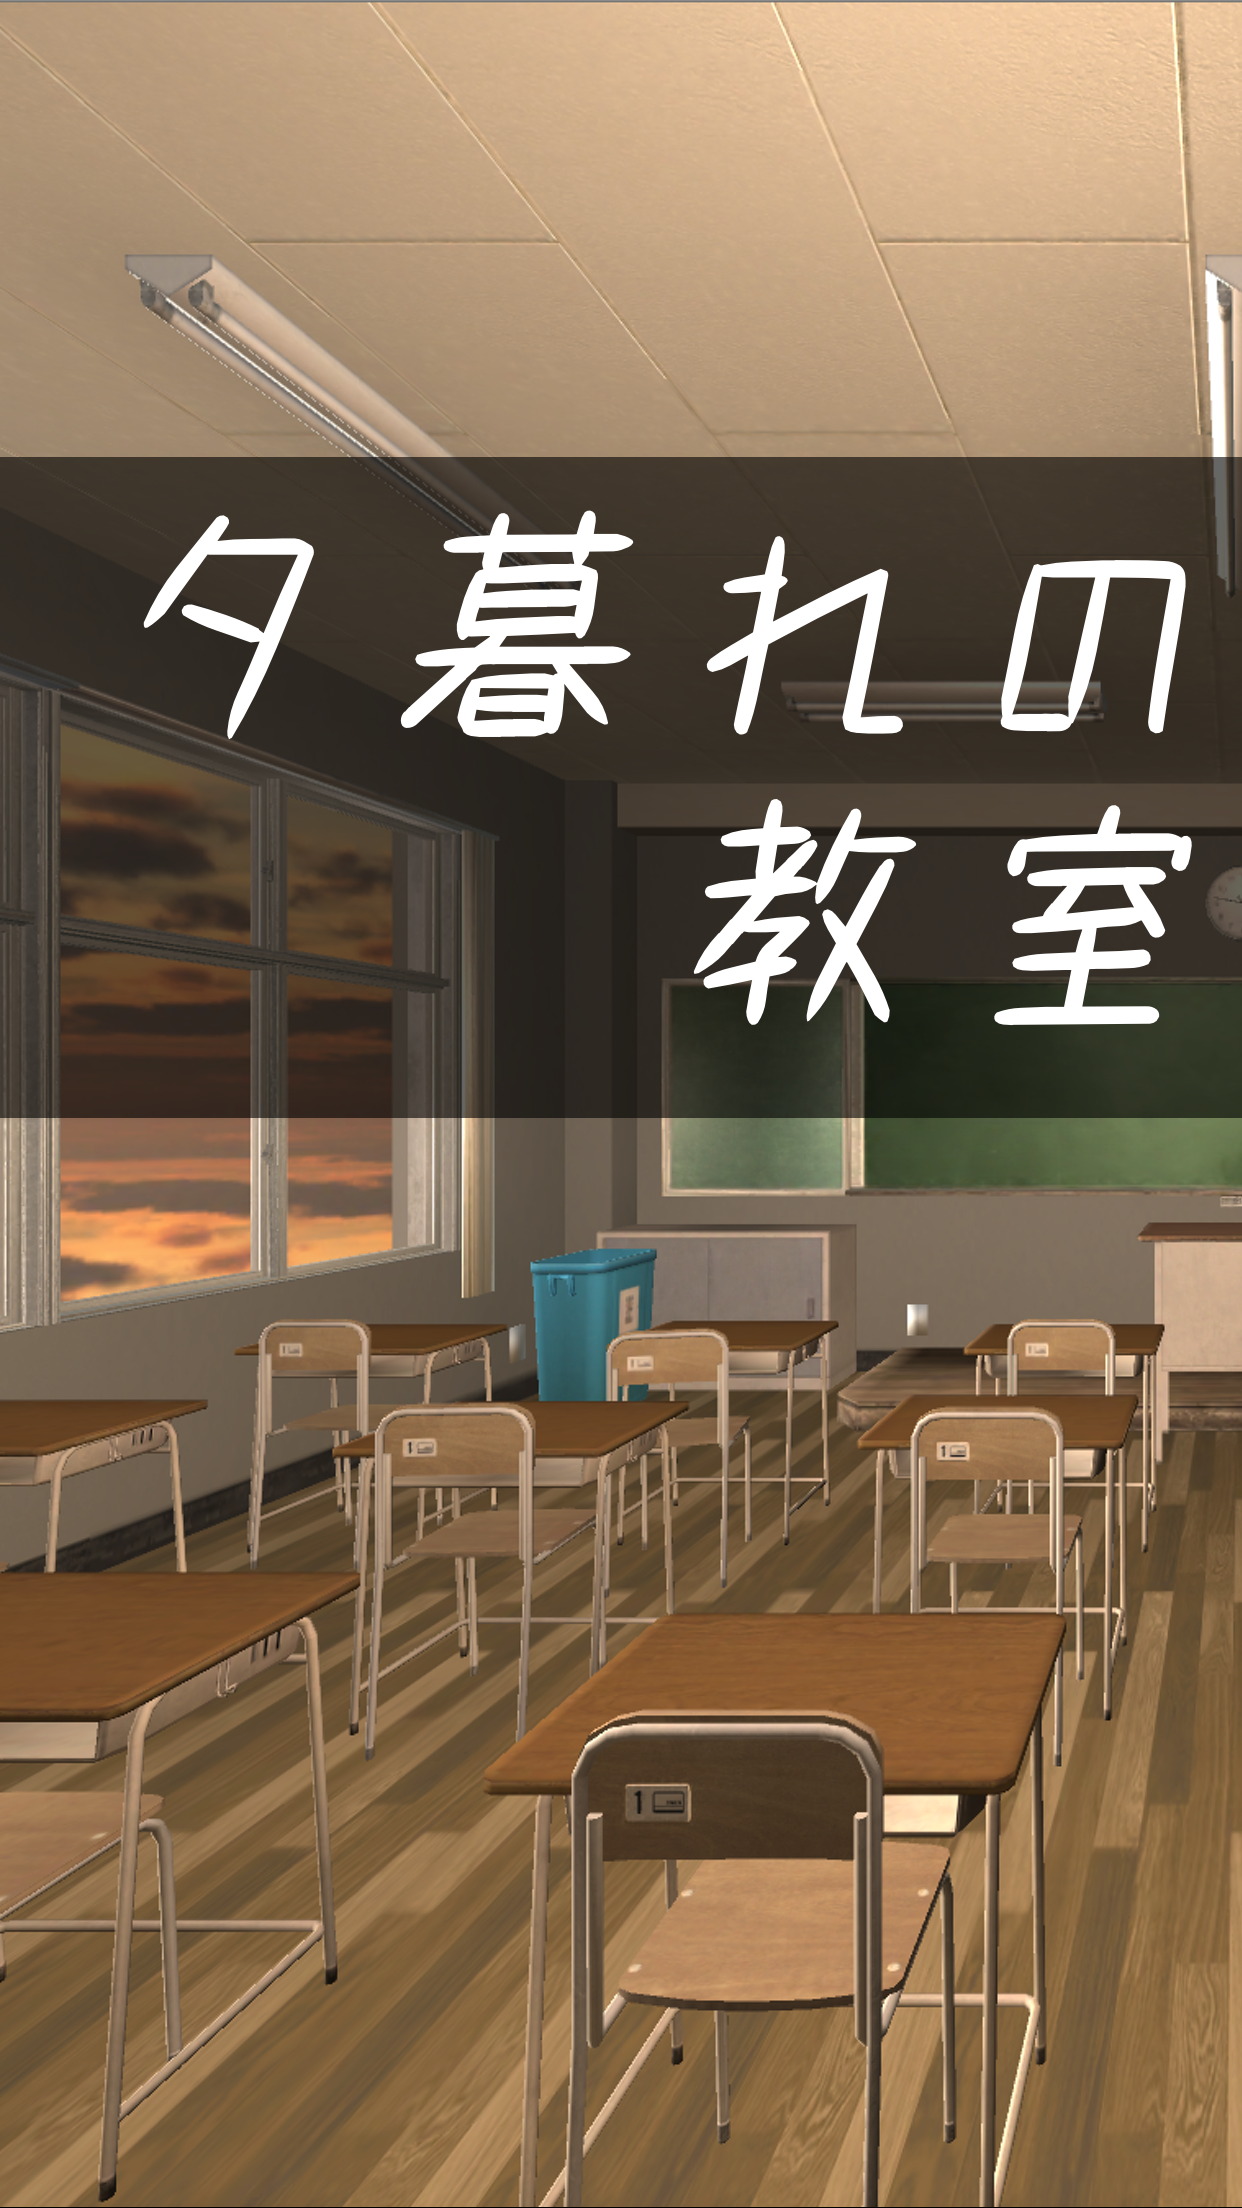 Screenshot 1 of Fluchtspiel Flucht aus dem Klassenzimmer in der Abenddämmerung 1.0.0